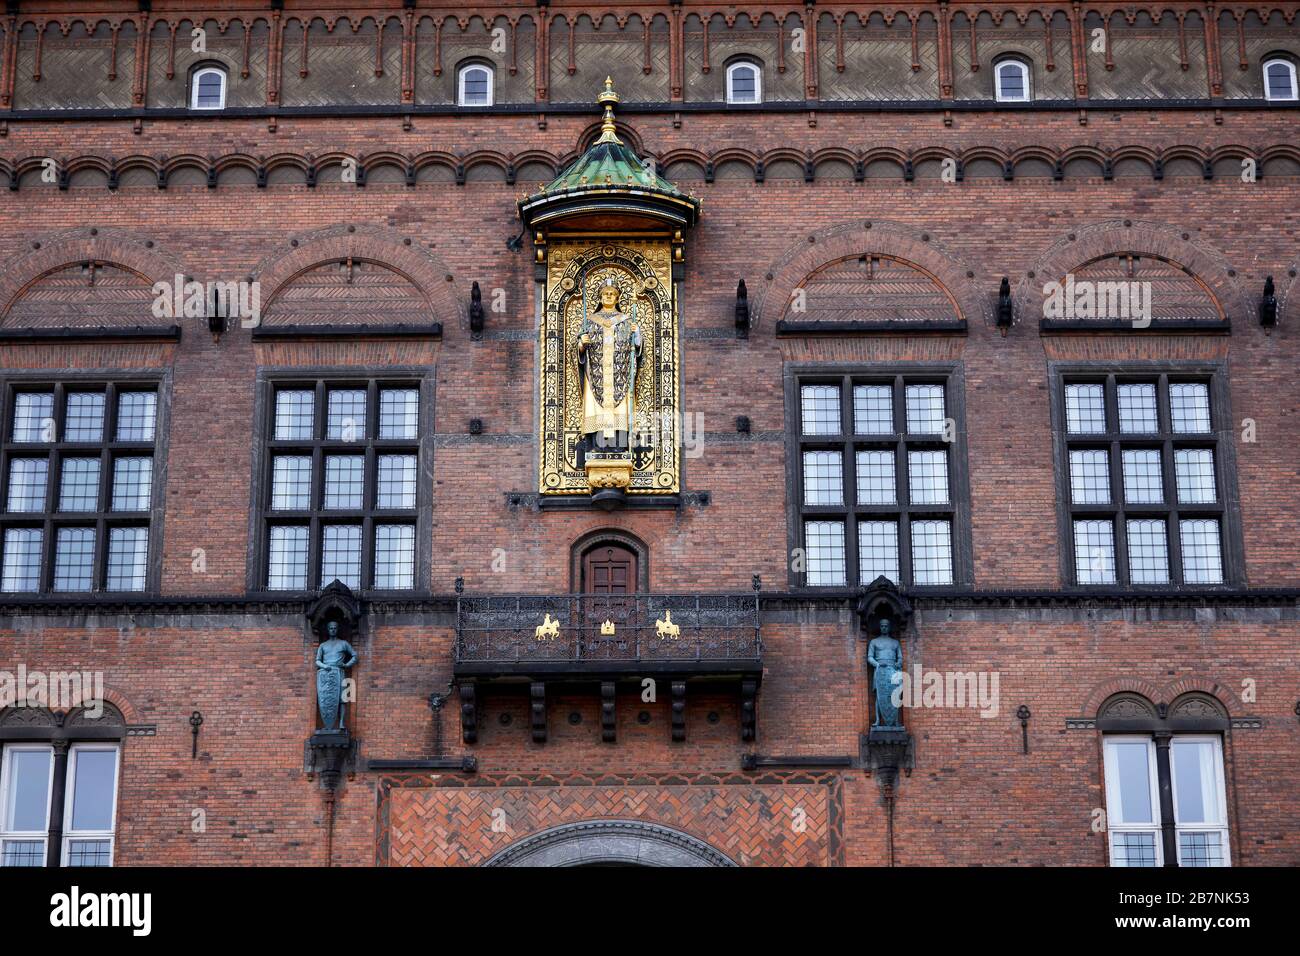 Kopenhagen, die Hauptstadt Dänemarks, das Rathaus von Kopenhagen, entworfen vom Architekten Martin Nyrop im nationalen romantischen Stil, Absalon-Reliefstil Stockfoto